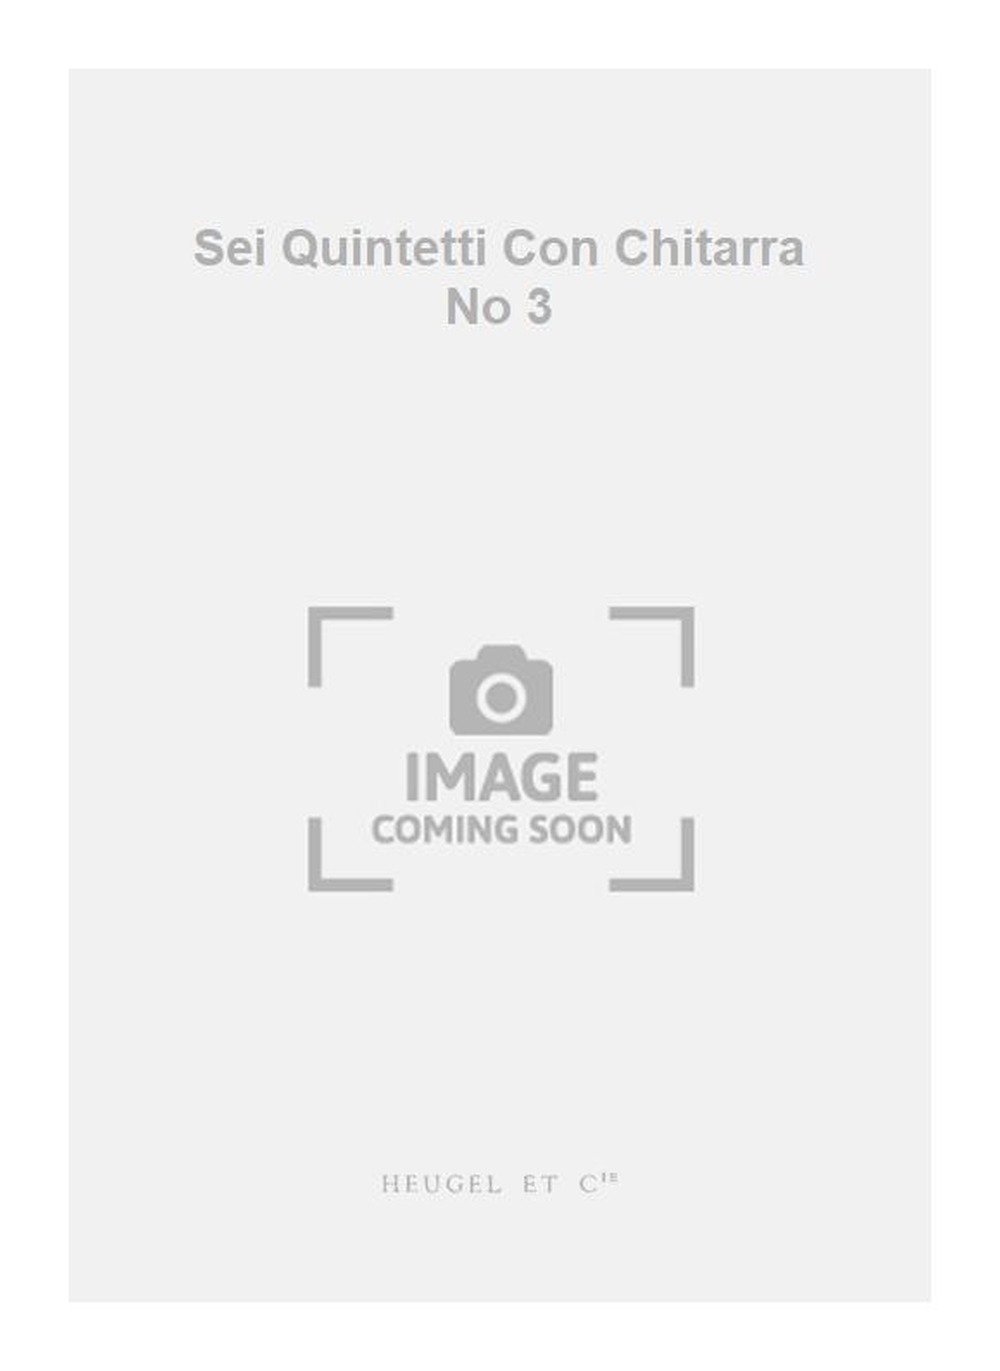 Luigi Boccherini: Sei Quintetti Con Chitarra No 3